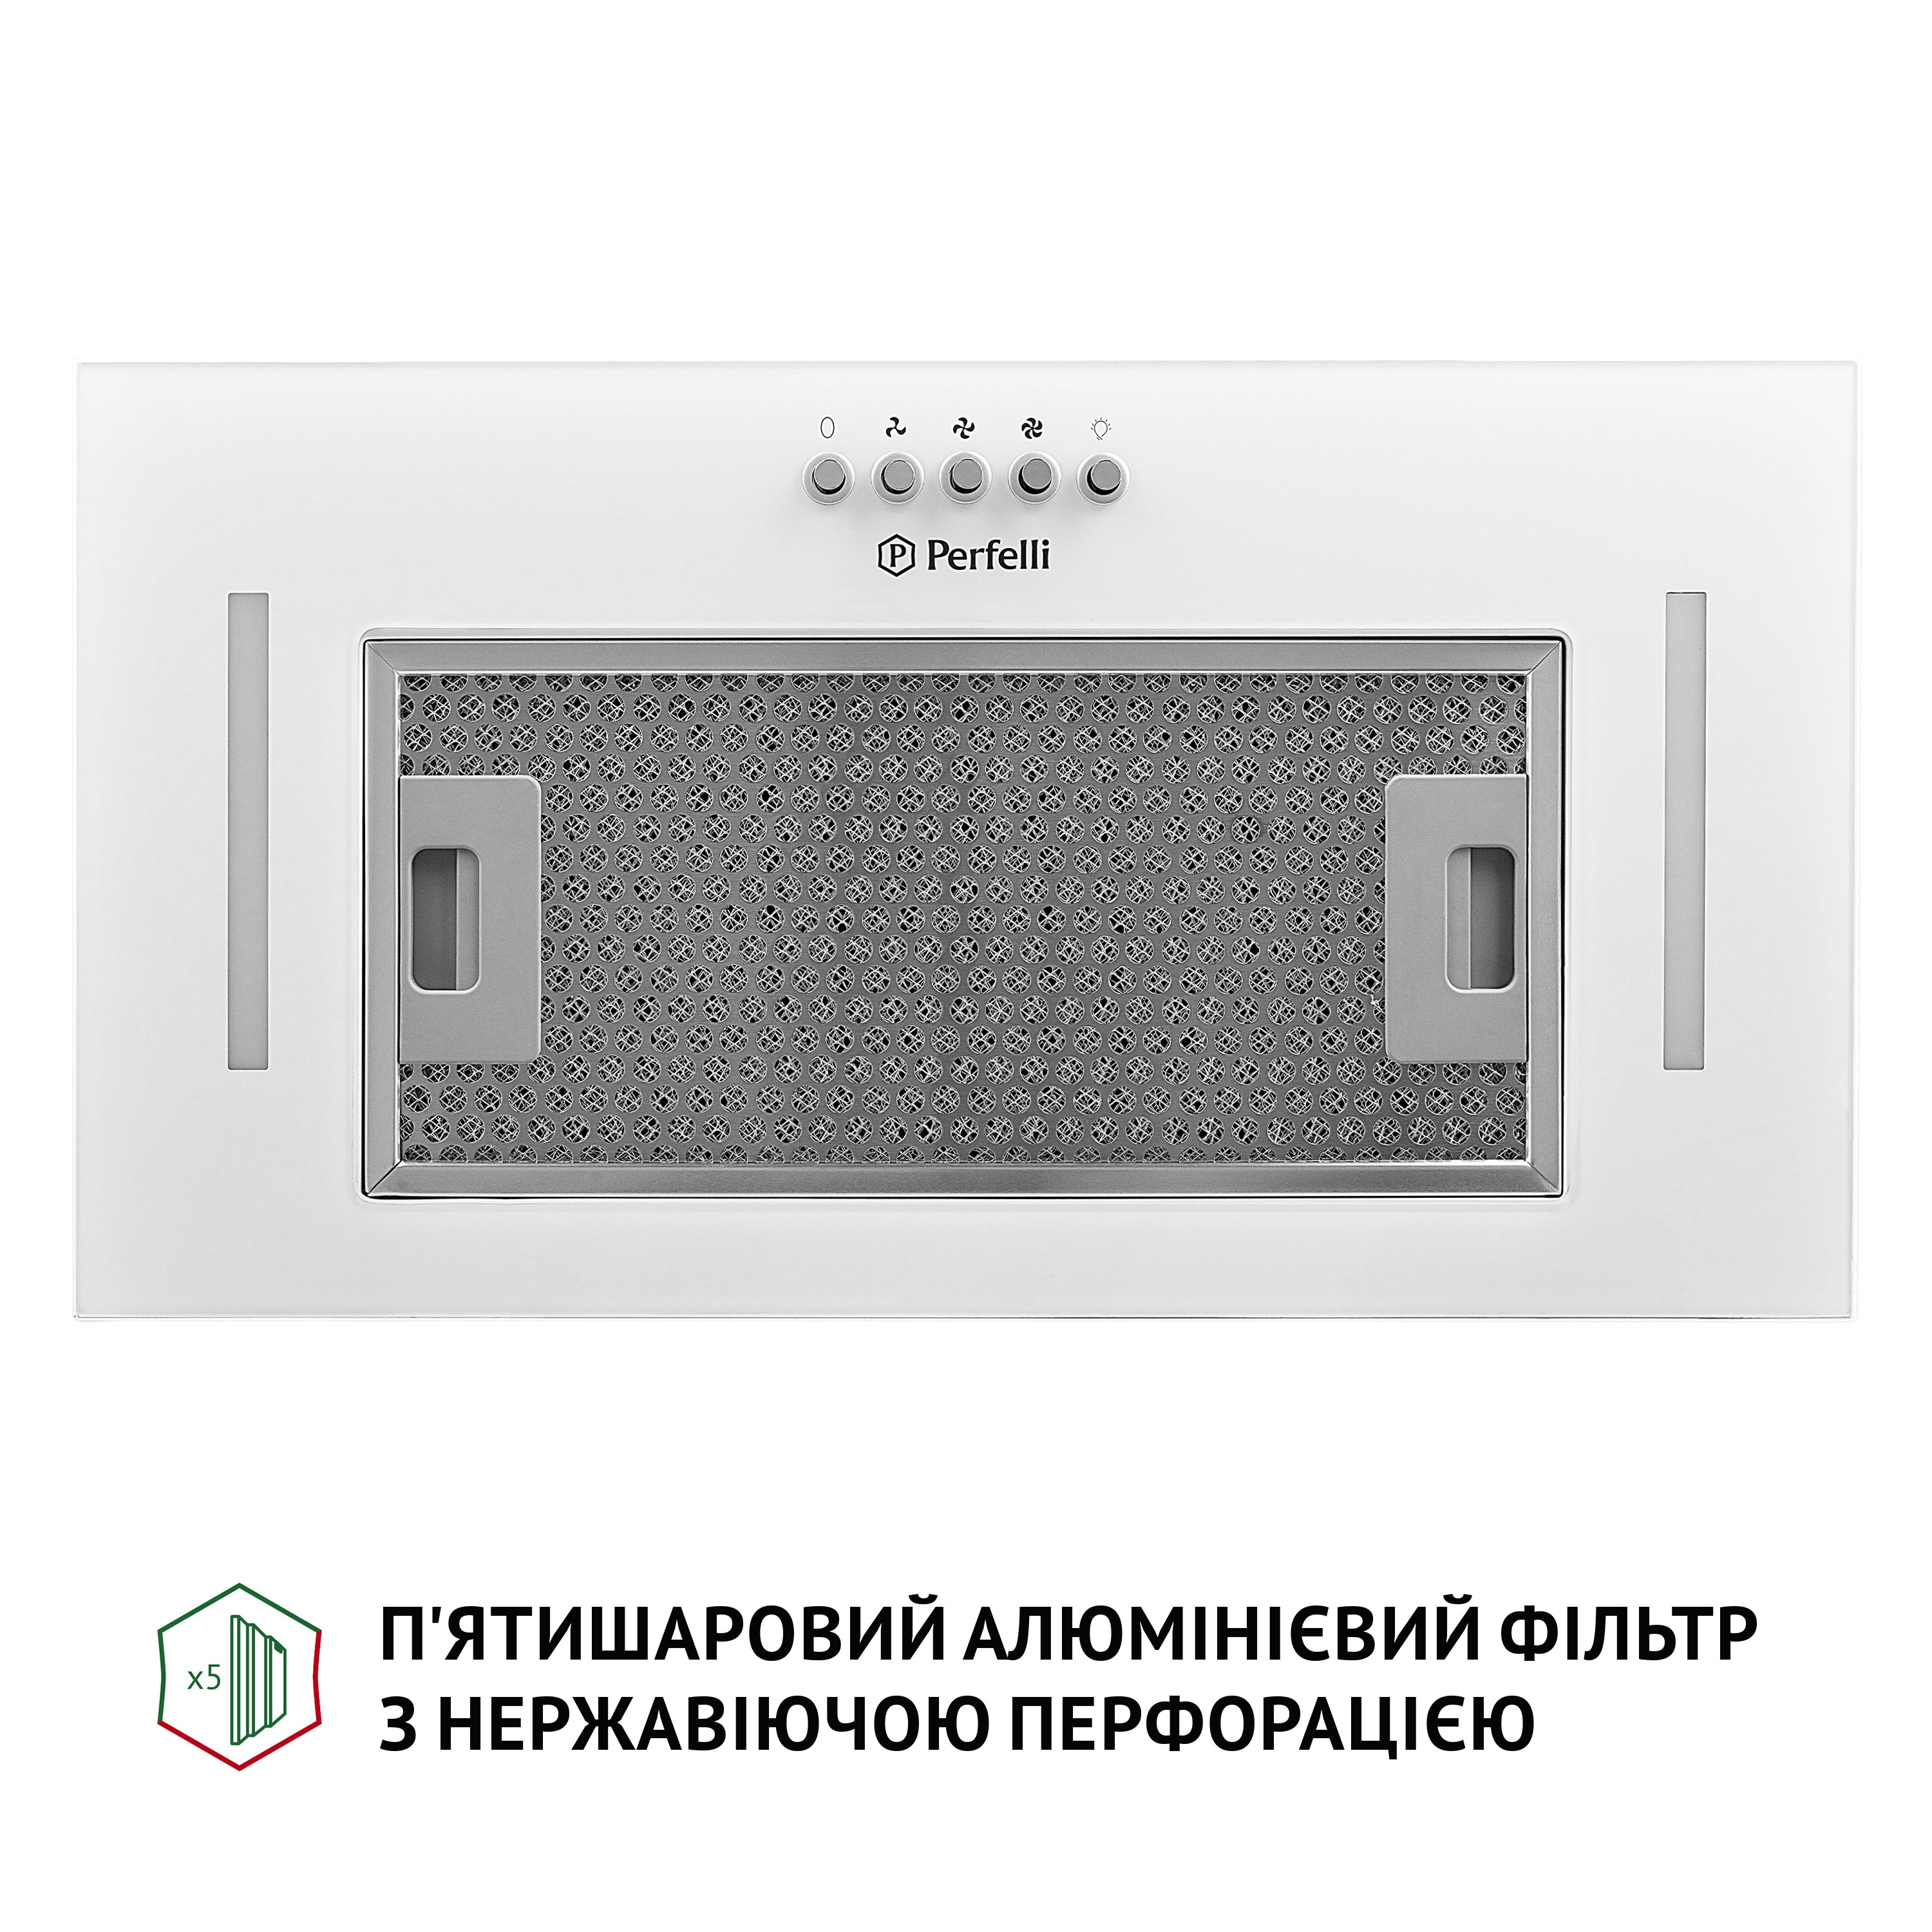 продаём Perfelli BI 5684 WH 1000 LED в Украине - фото 4